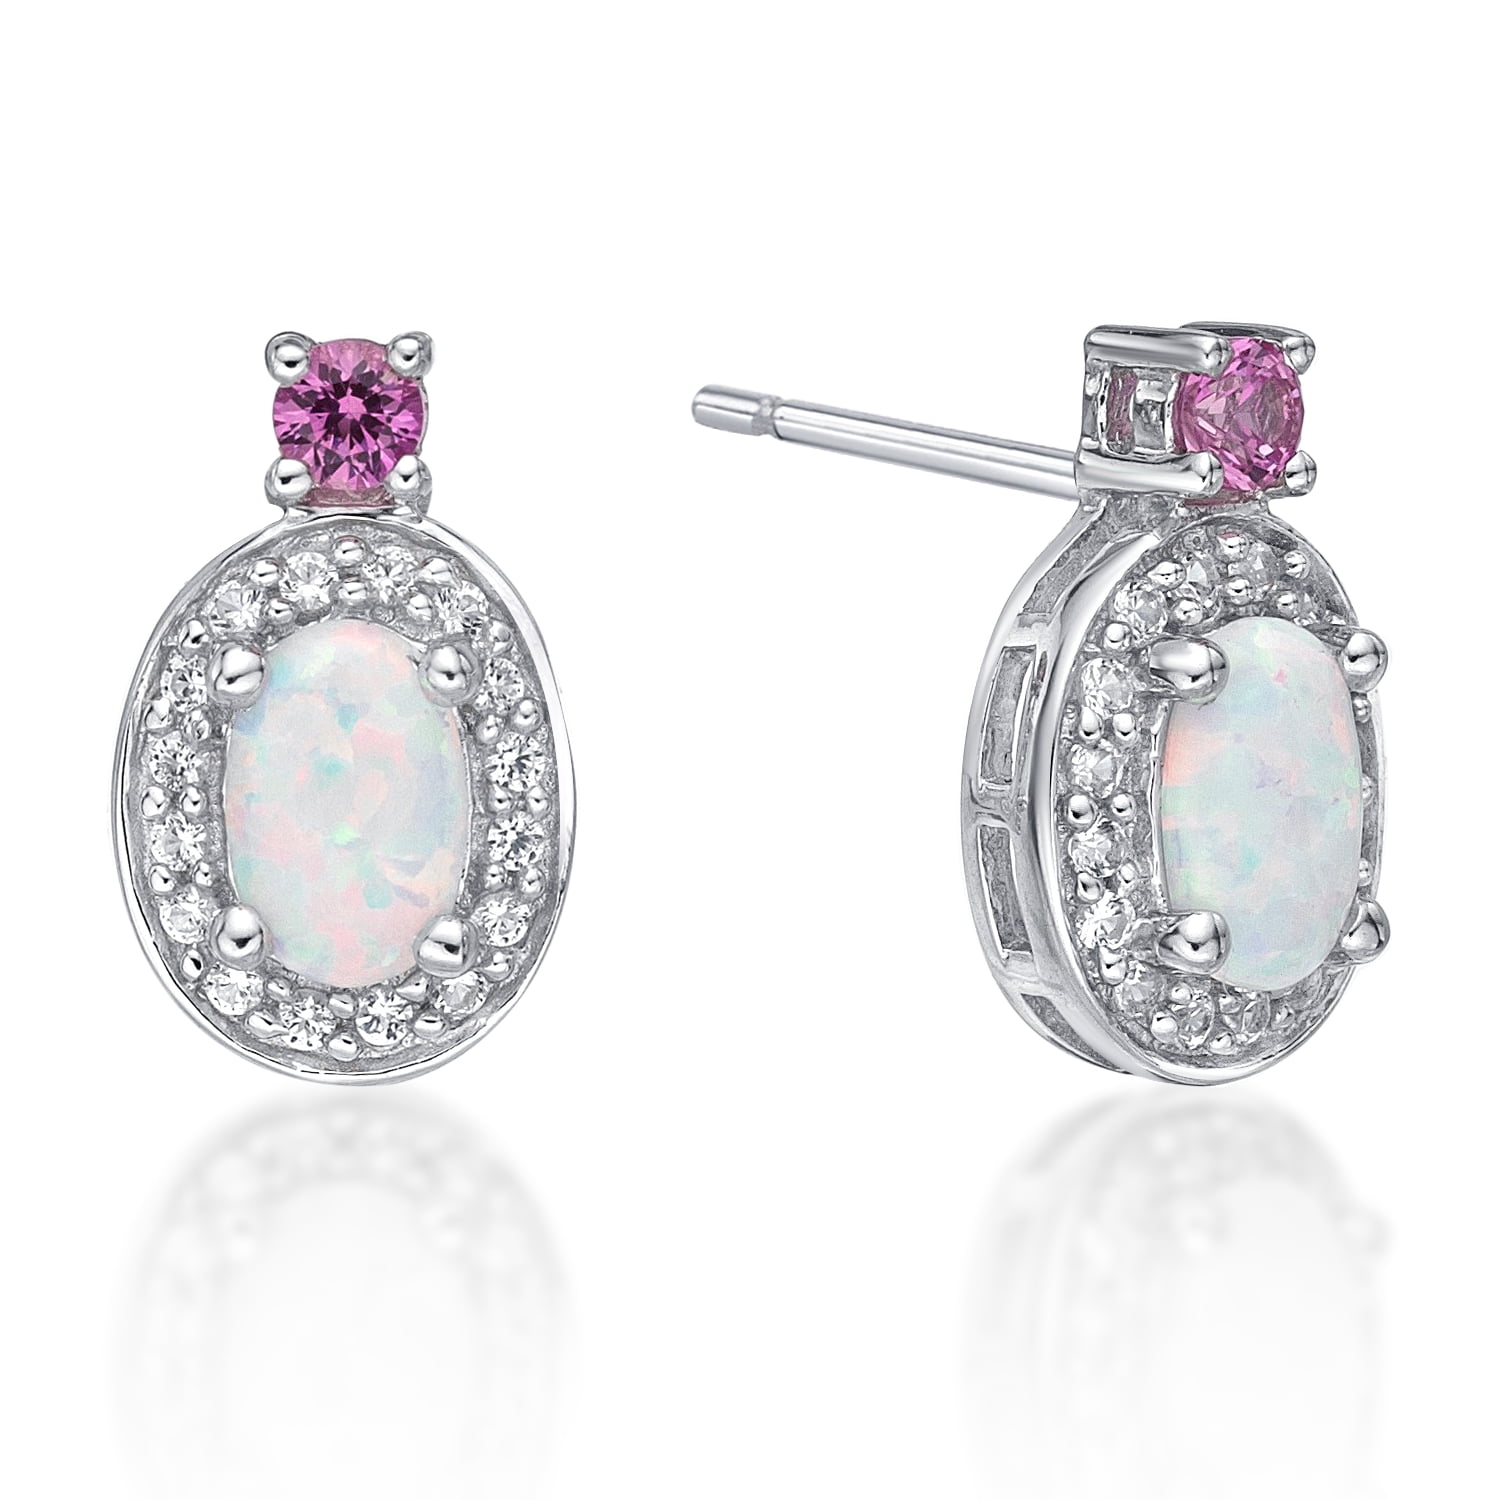 Fashion Jewelry Pink White Fire Opal Gems Silver Stud Earrings 